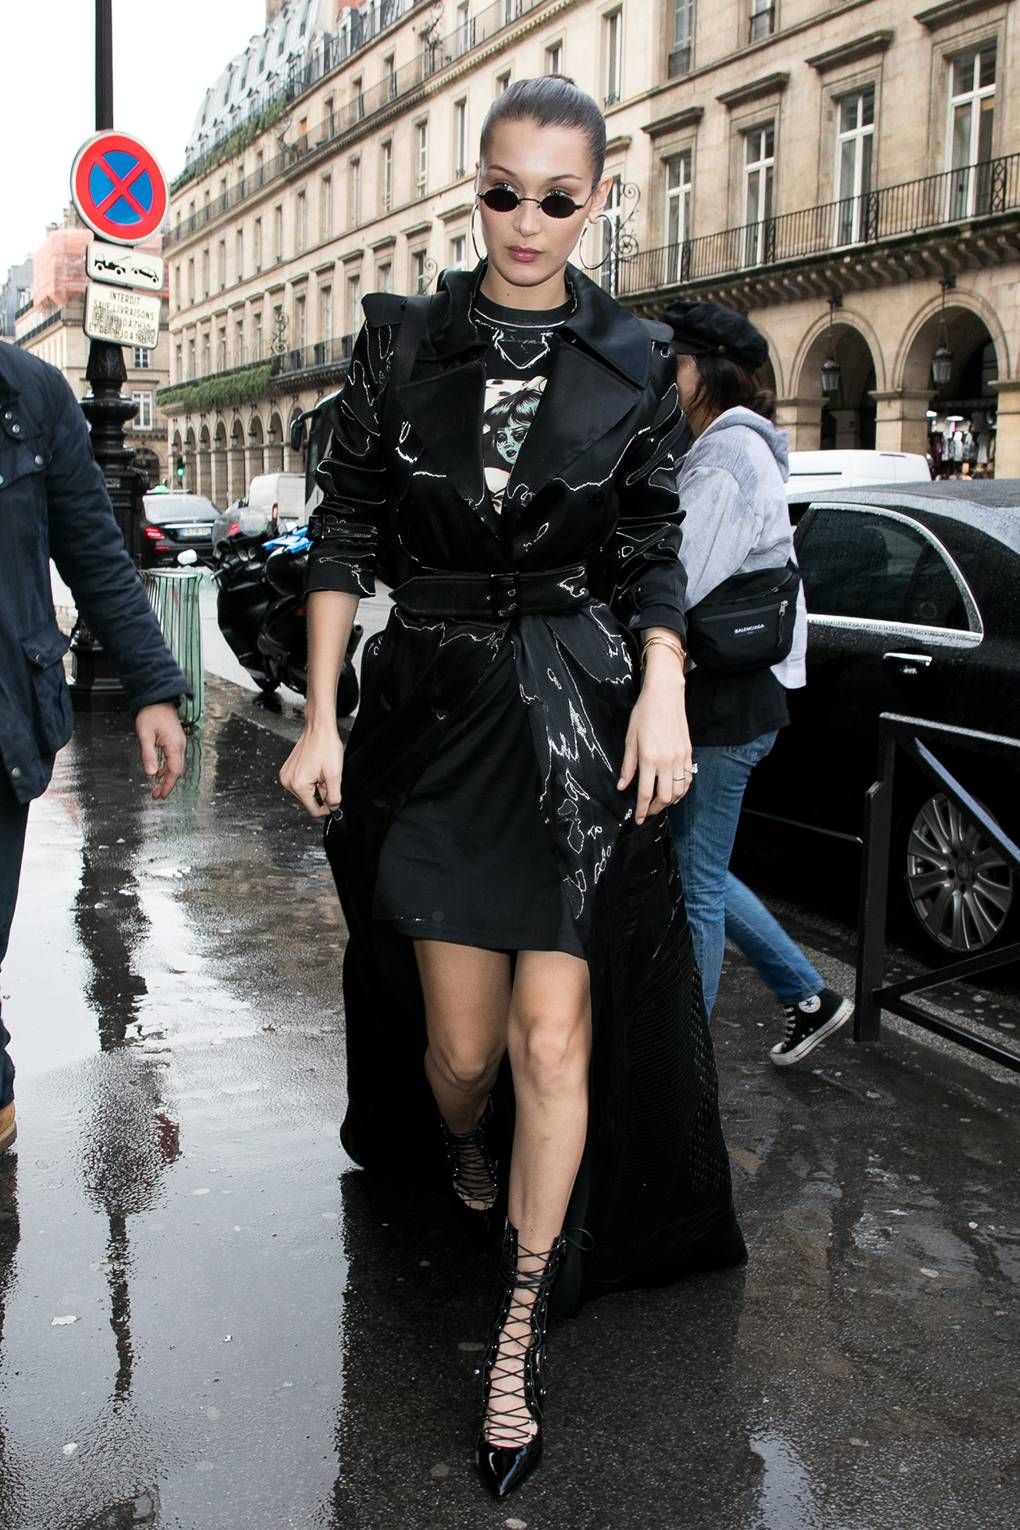 Outfit a la Bella Hadid yang Pas Ditiru Saat Musim Hujan